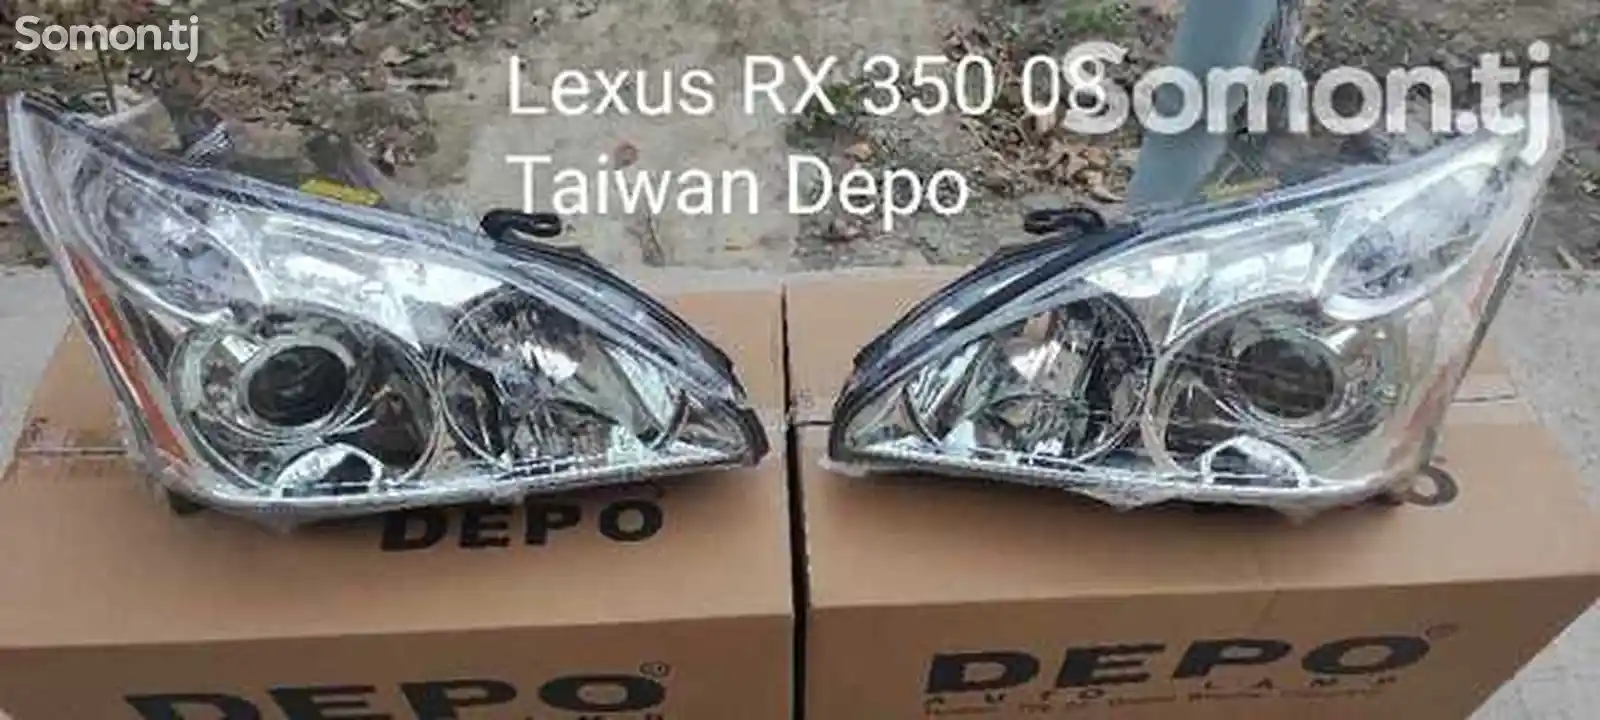 Передние фары Depo на Lexus RX350 2004-2009-1